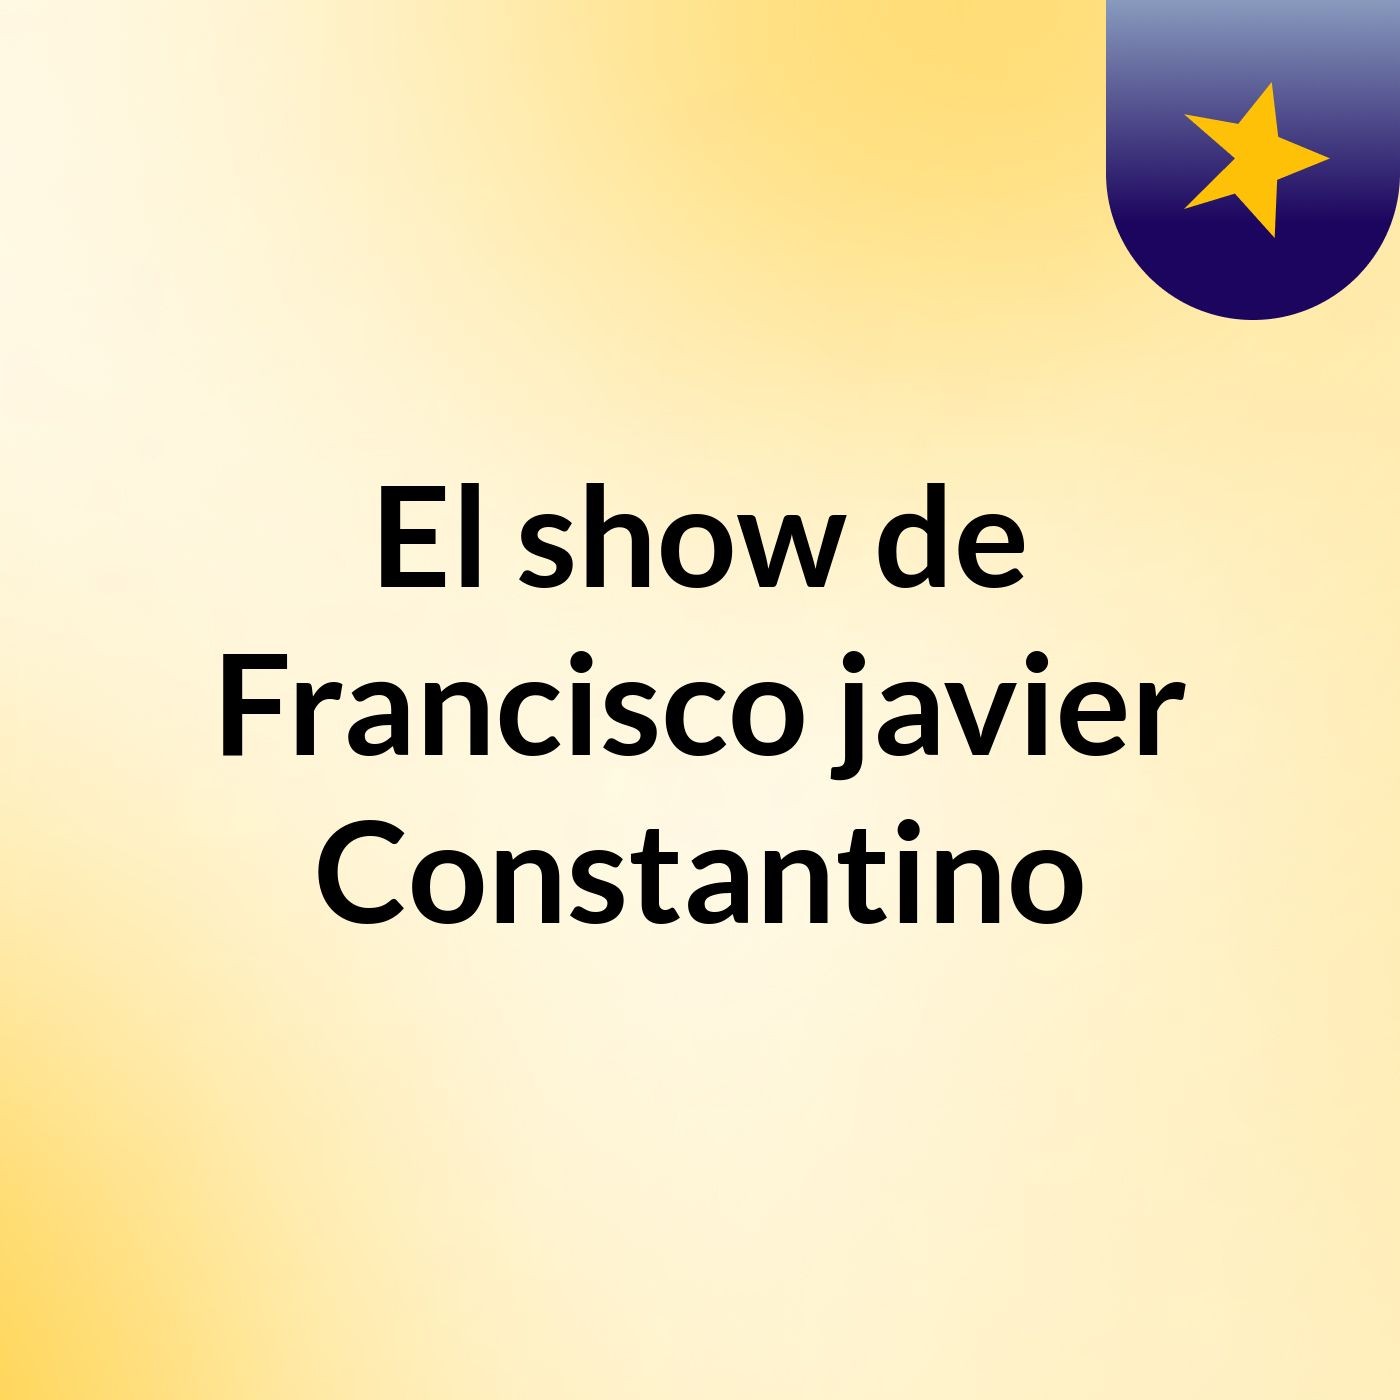 Episodio 4 - El show de Francisco javier Constantino